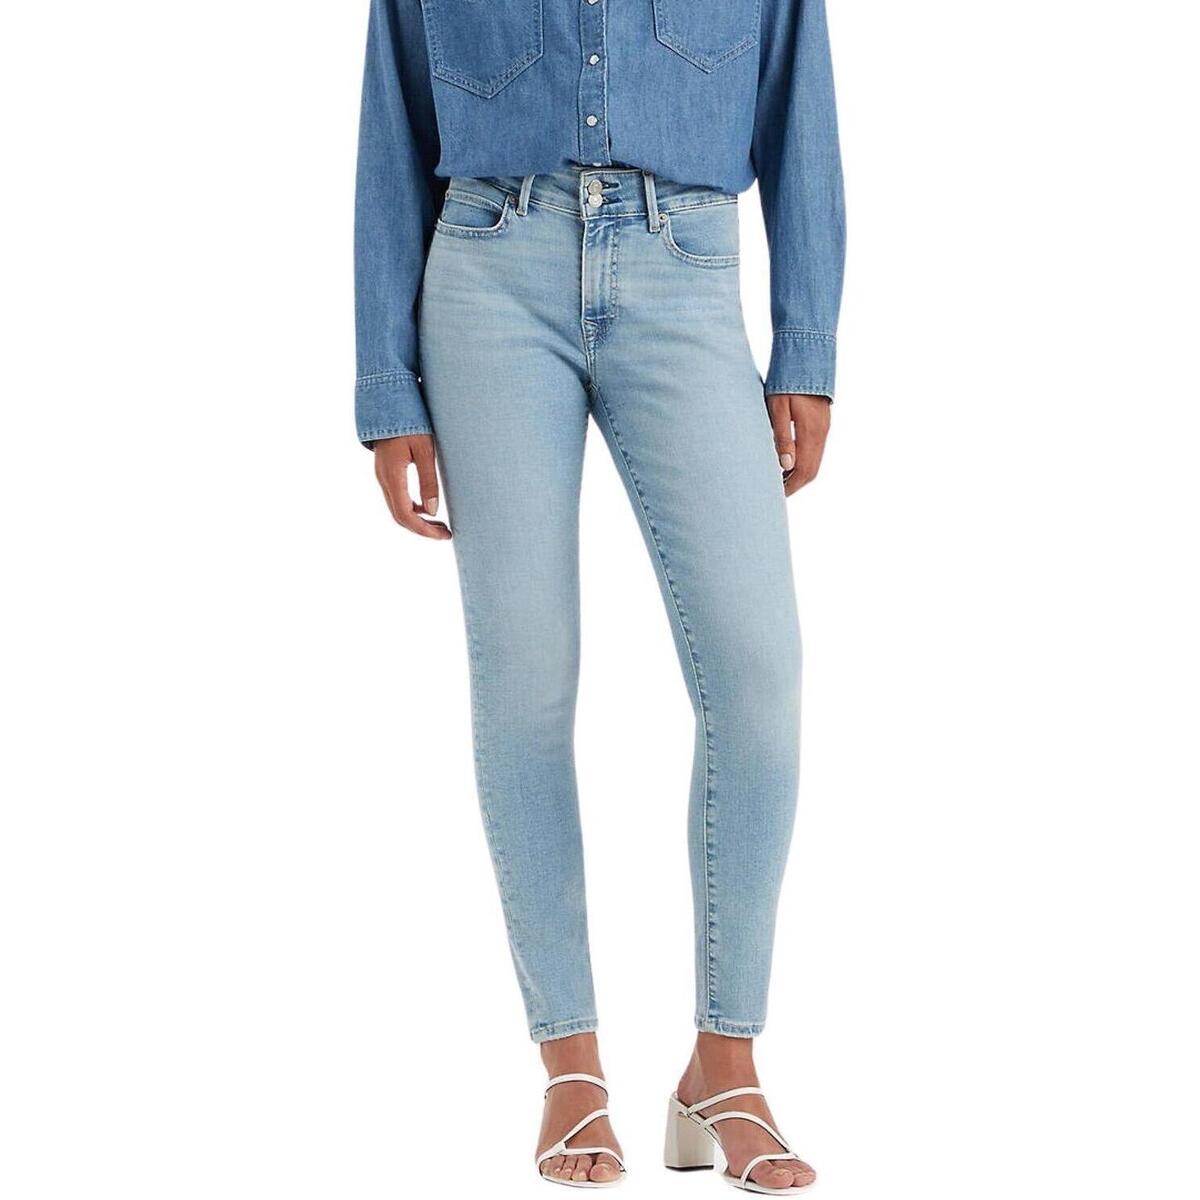 Abbigliamento Jeans Levi's  Blu